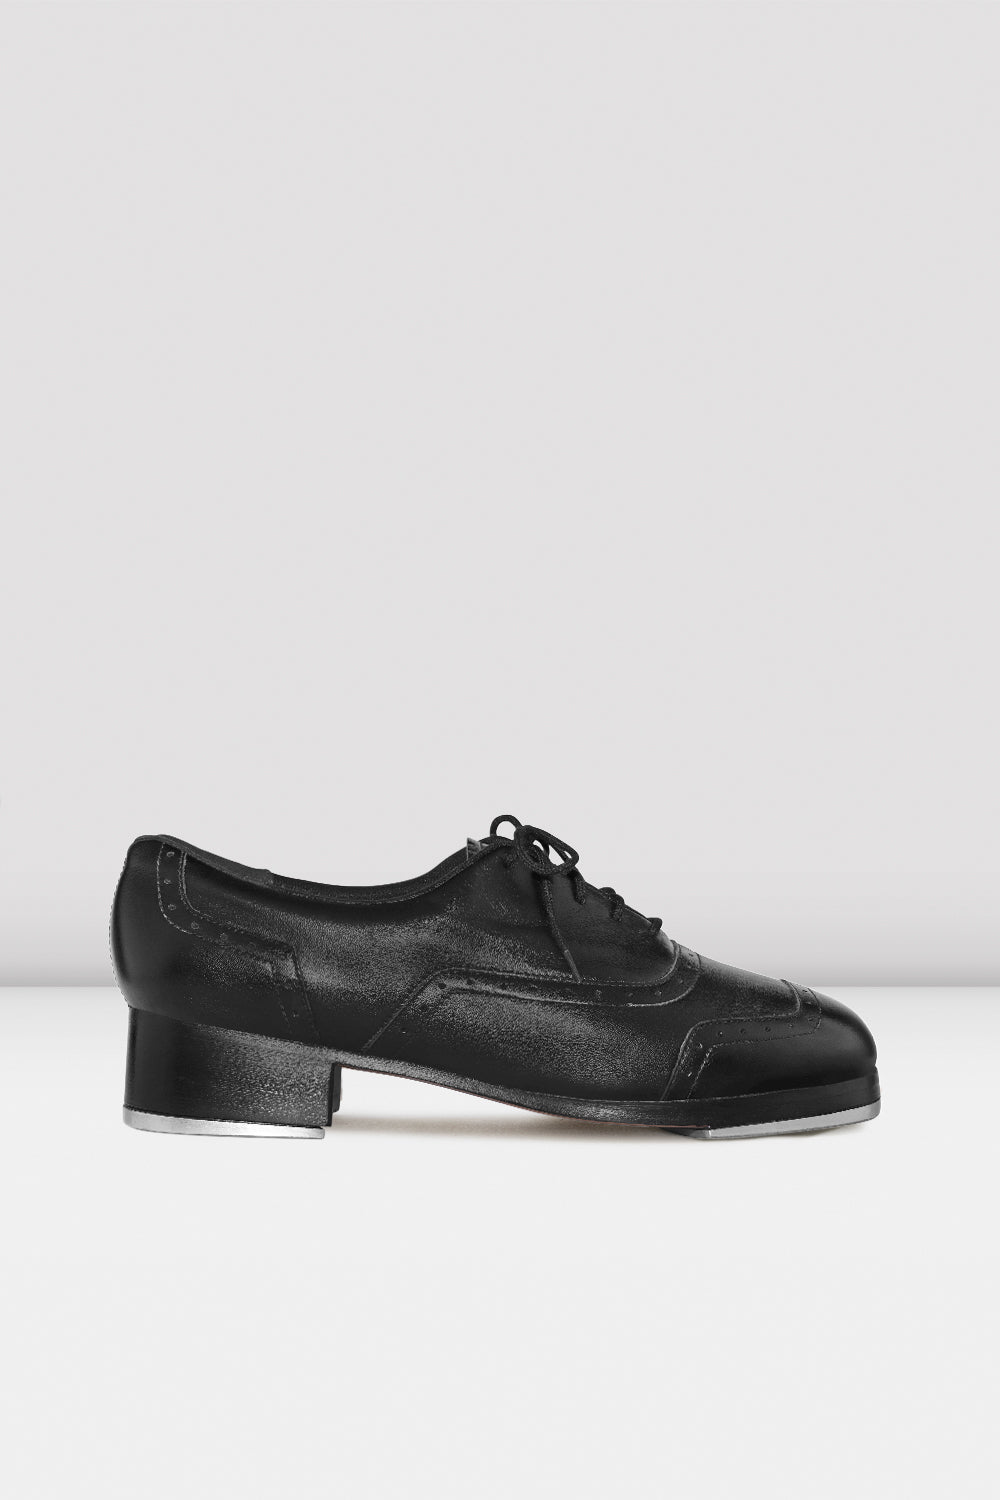 BLOCH Mens Jason Samuels Smith Tap Shoes, Black Leather